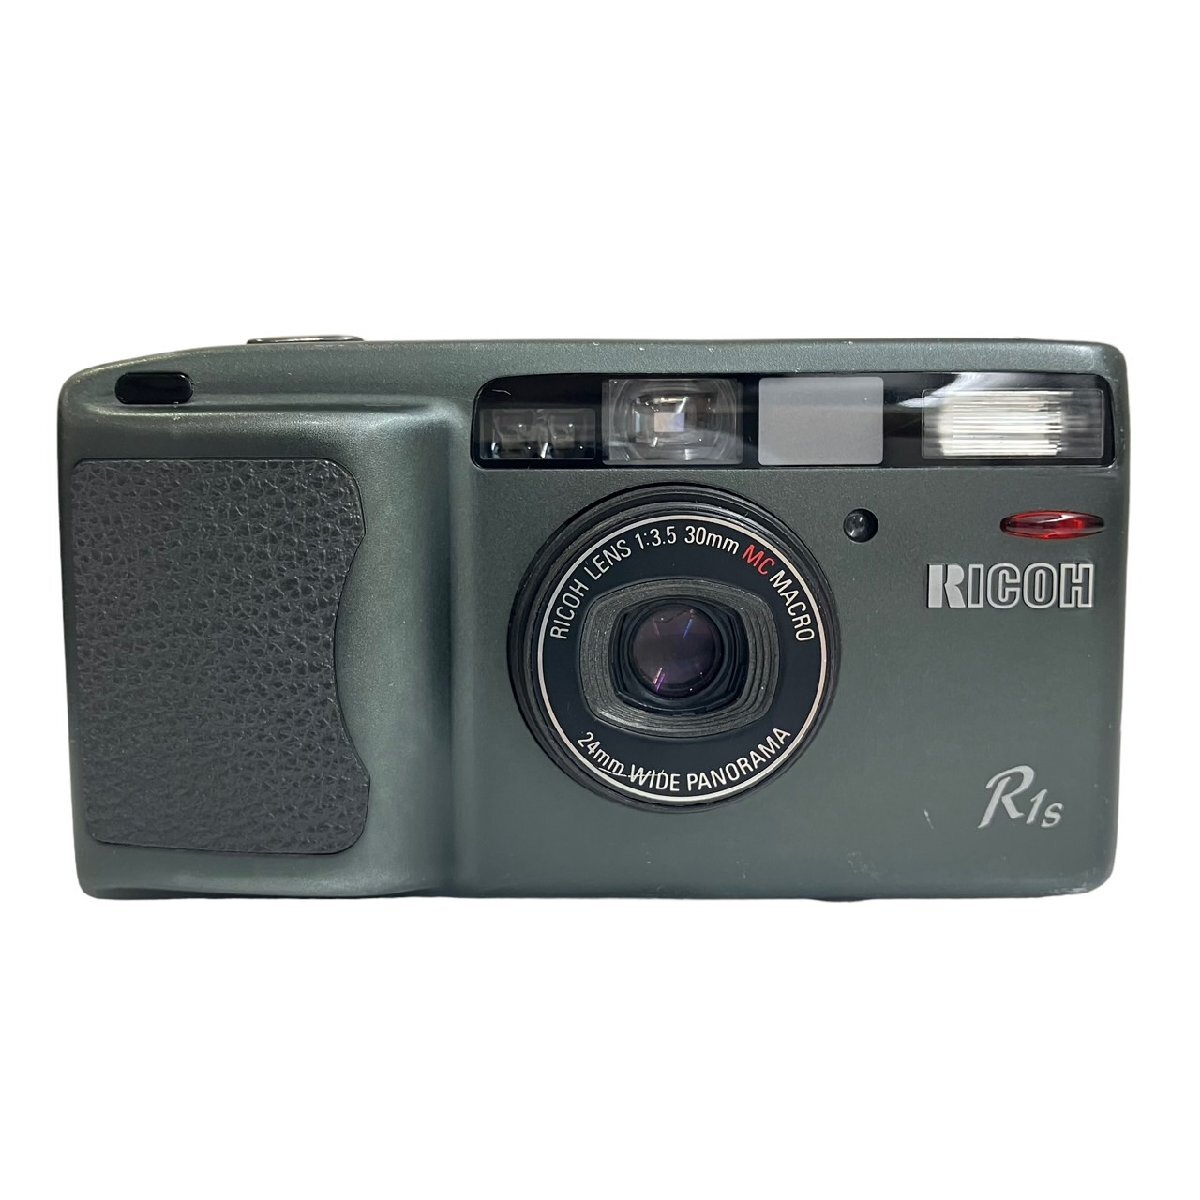 RICOH リコー R1S コンパクトフィルムカメラ 30mm F3.5 MC MACRO 24mm WIDE PANORAMA 起動確認済_画像2